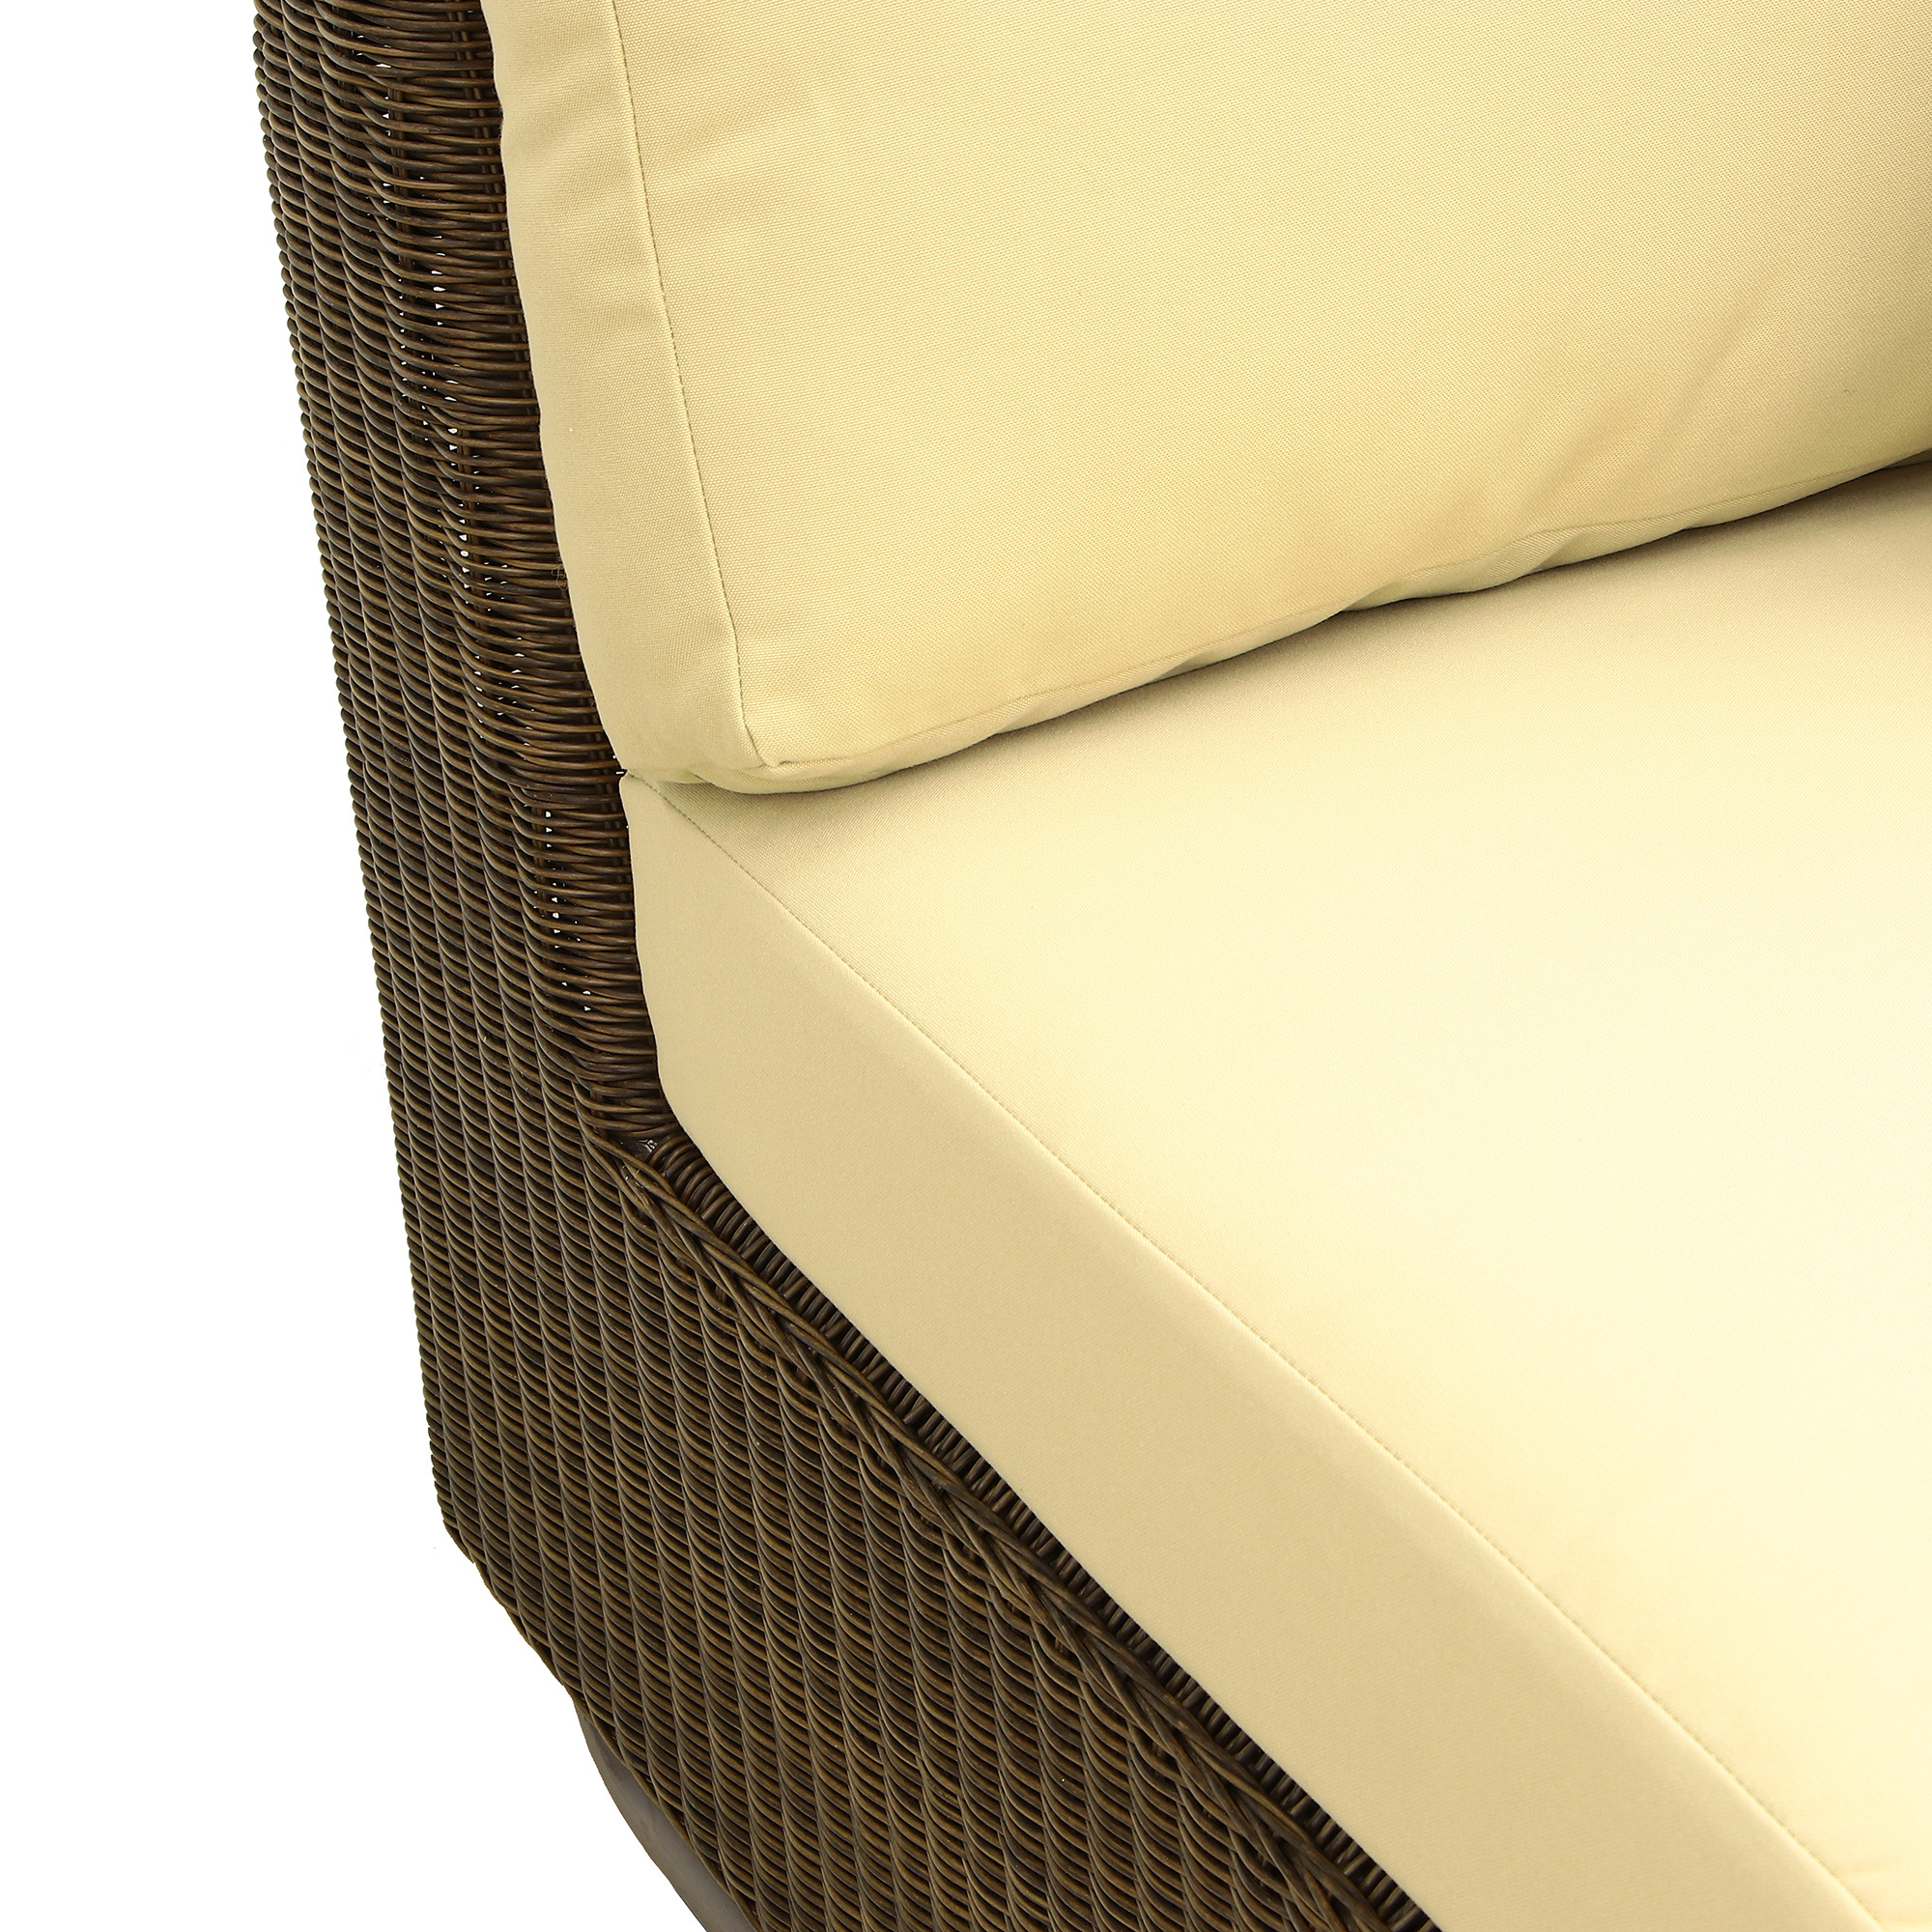 Комплект мебели угловой Ronica tusson 5 предметов, цвет коричневый, размер 60х60 - фото 14